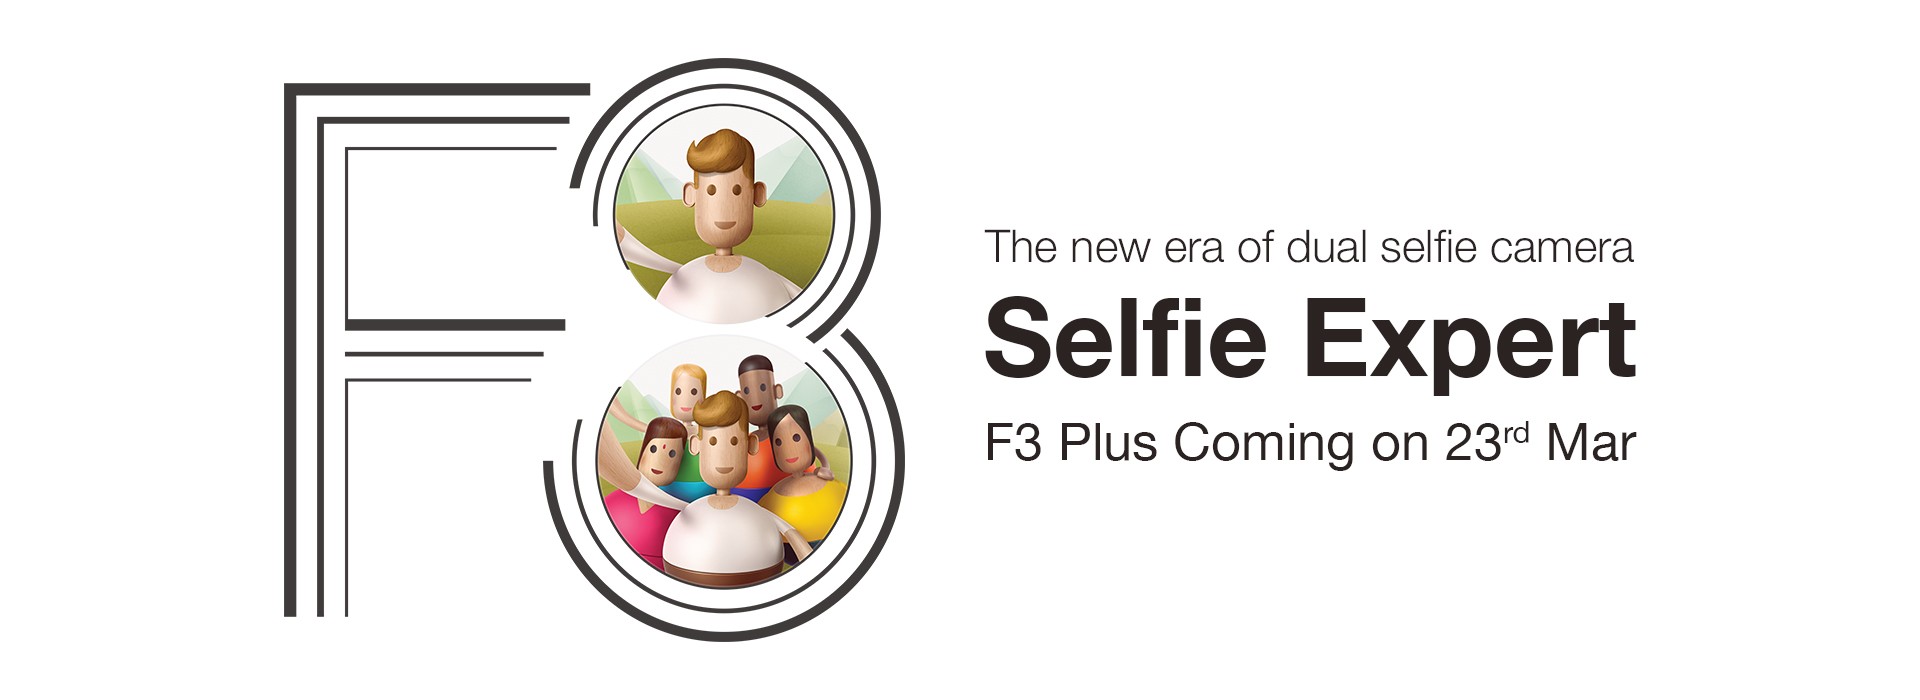 Oppo F3 Plus confirmado para su lanzamiento en India el 23 de marzo